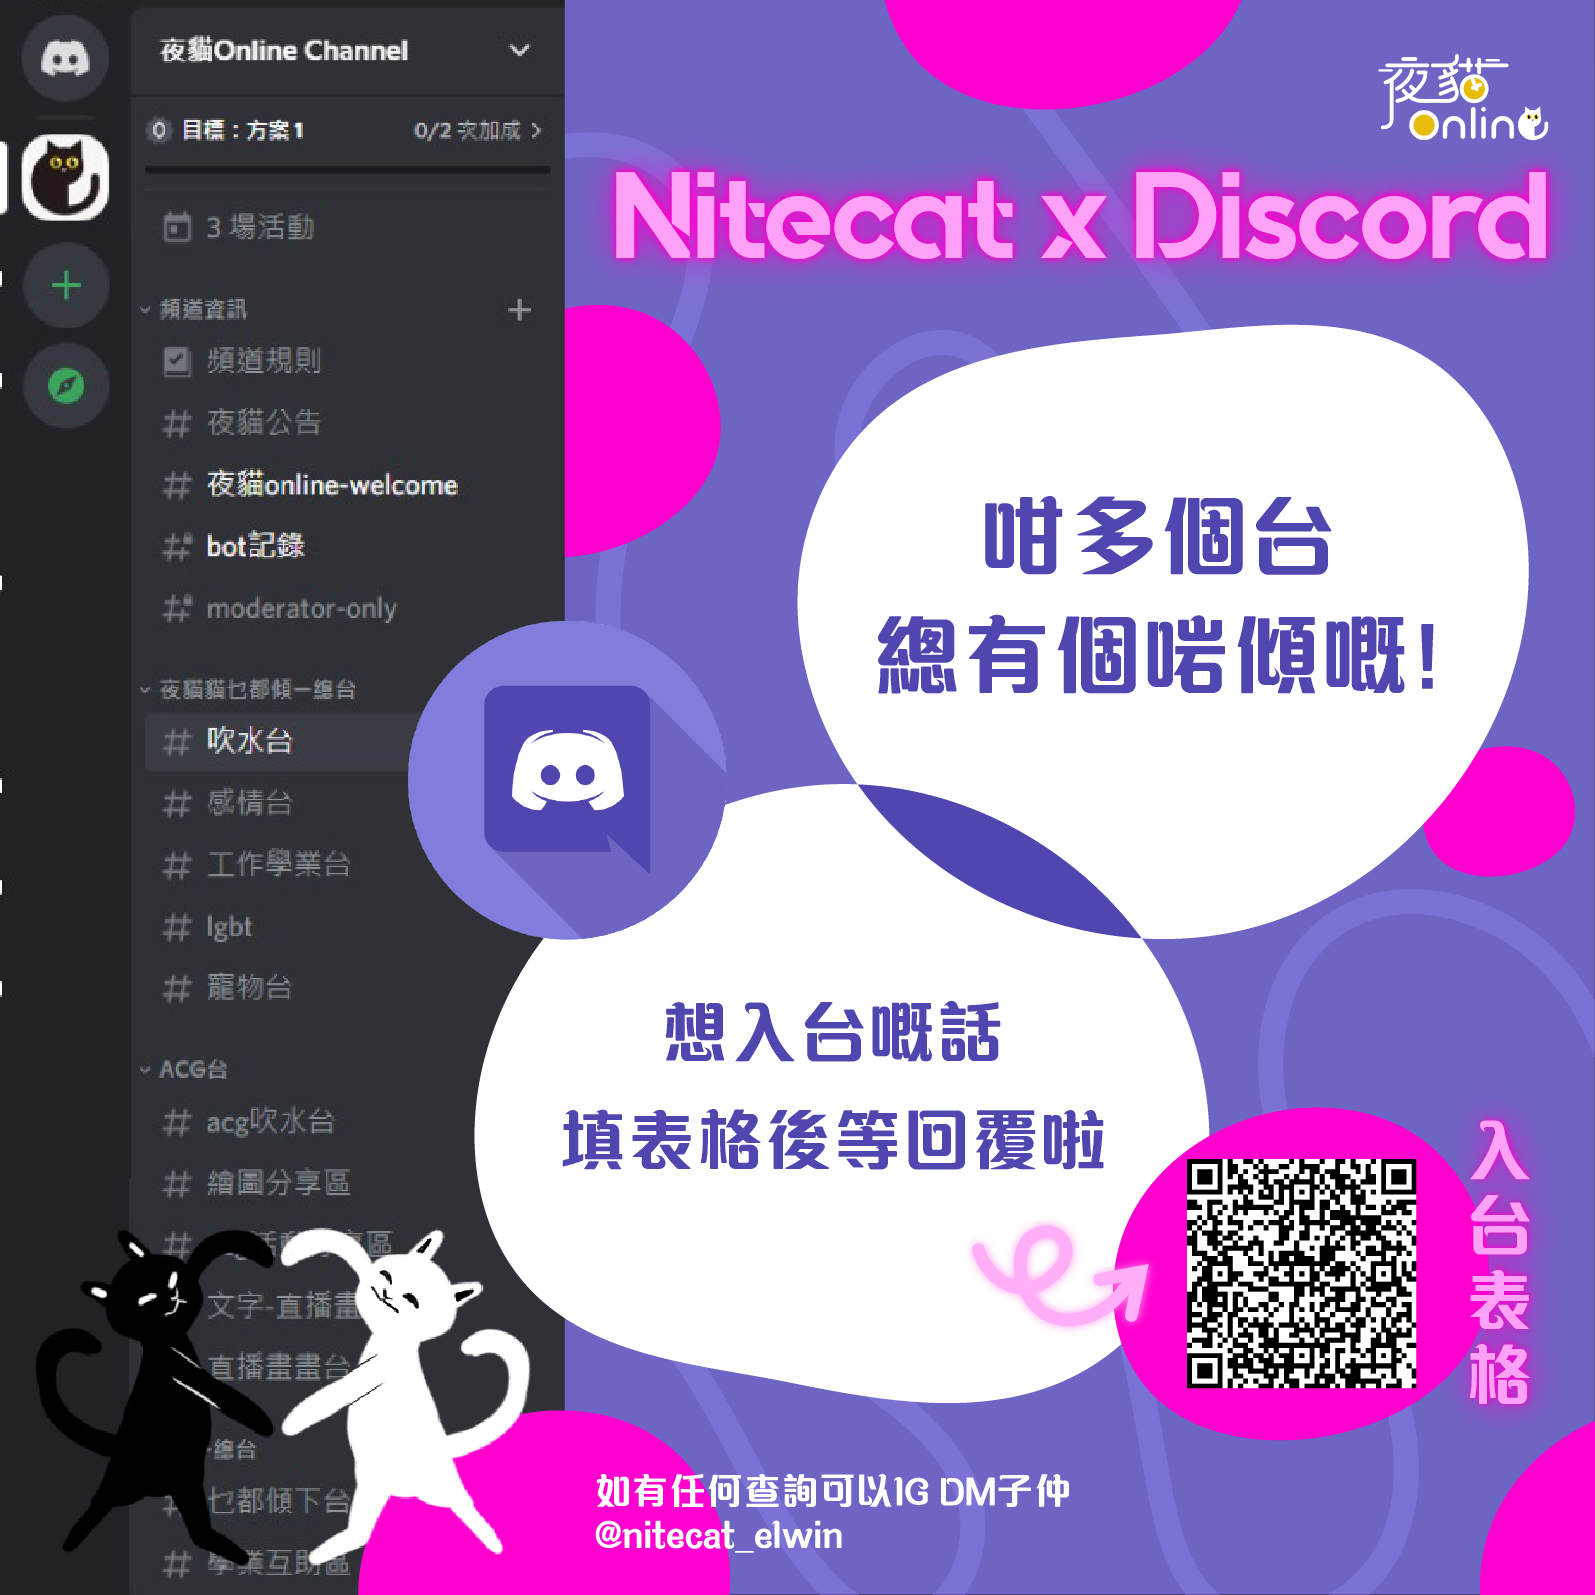 Nitecat x Discord